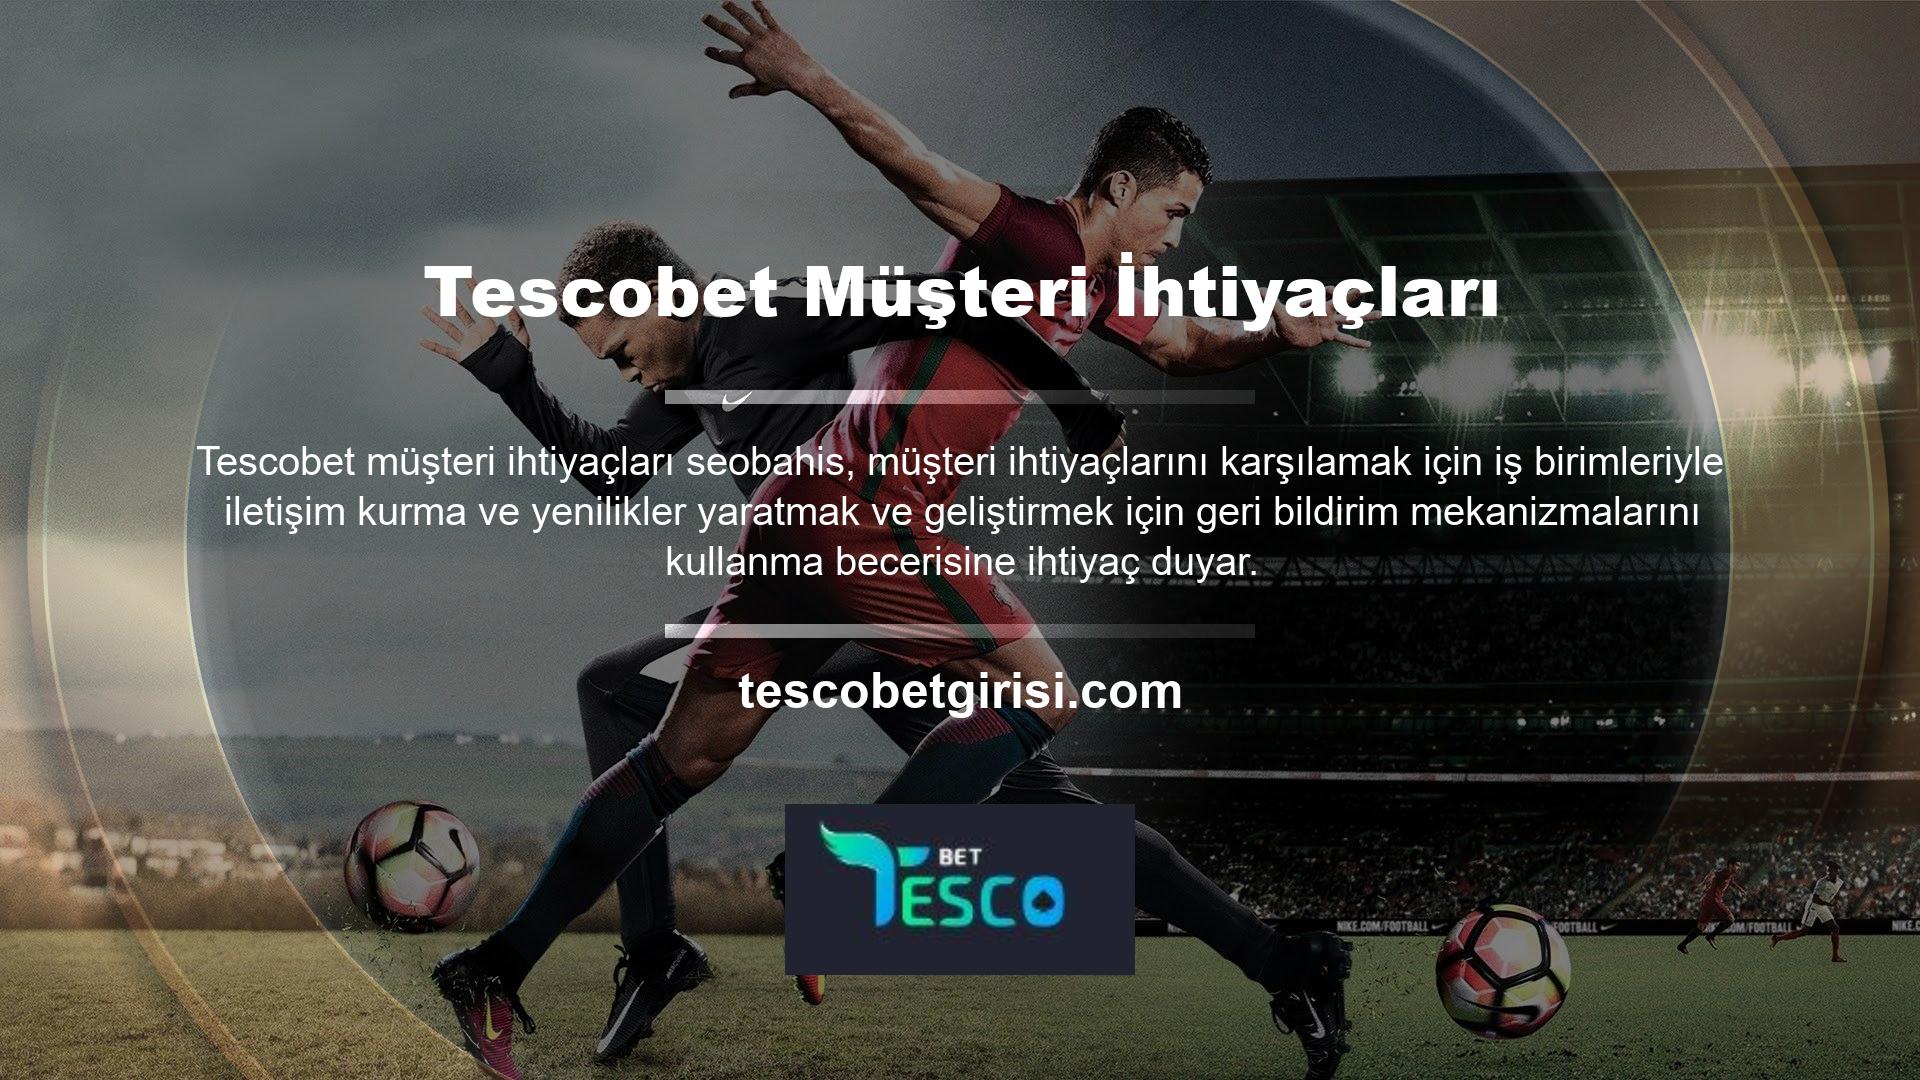 Tescobet, canlı destek hizmetiyle sektörün en proaktif satıcısı olmak ve çözüm merkezi olmak istiyordu